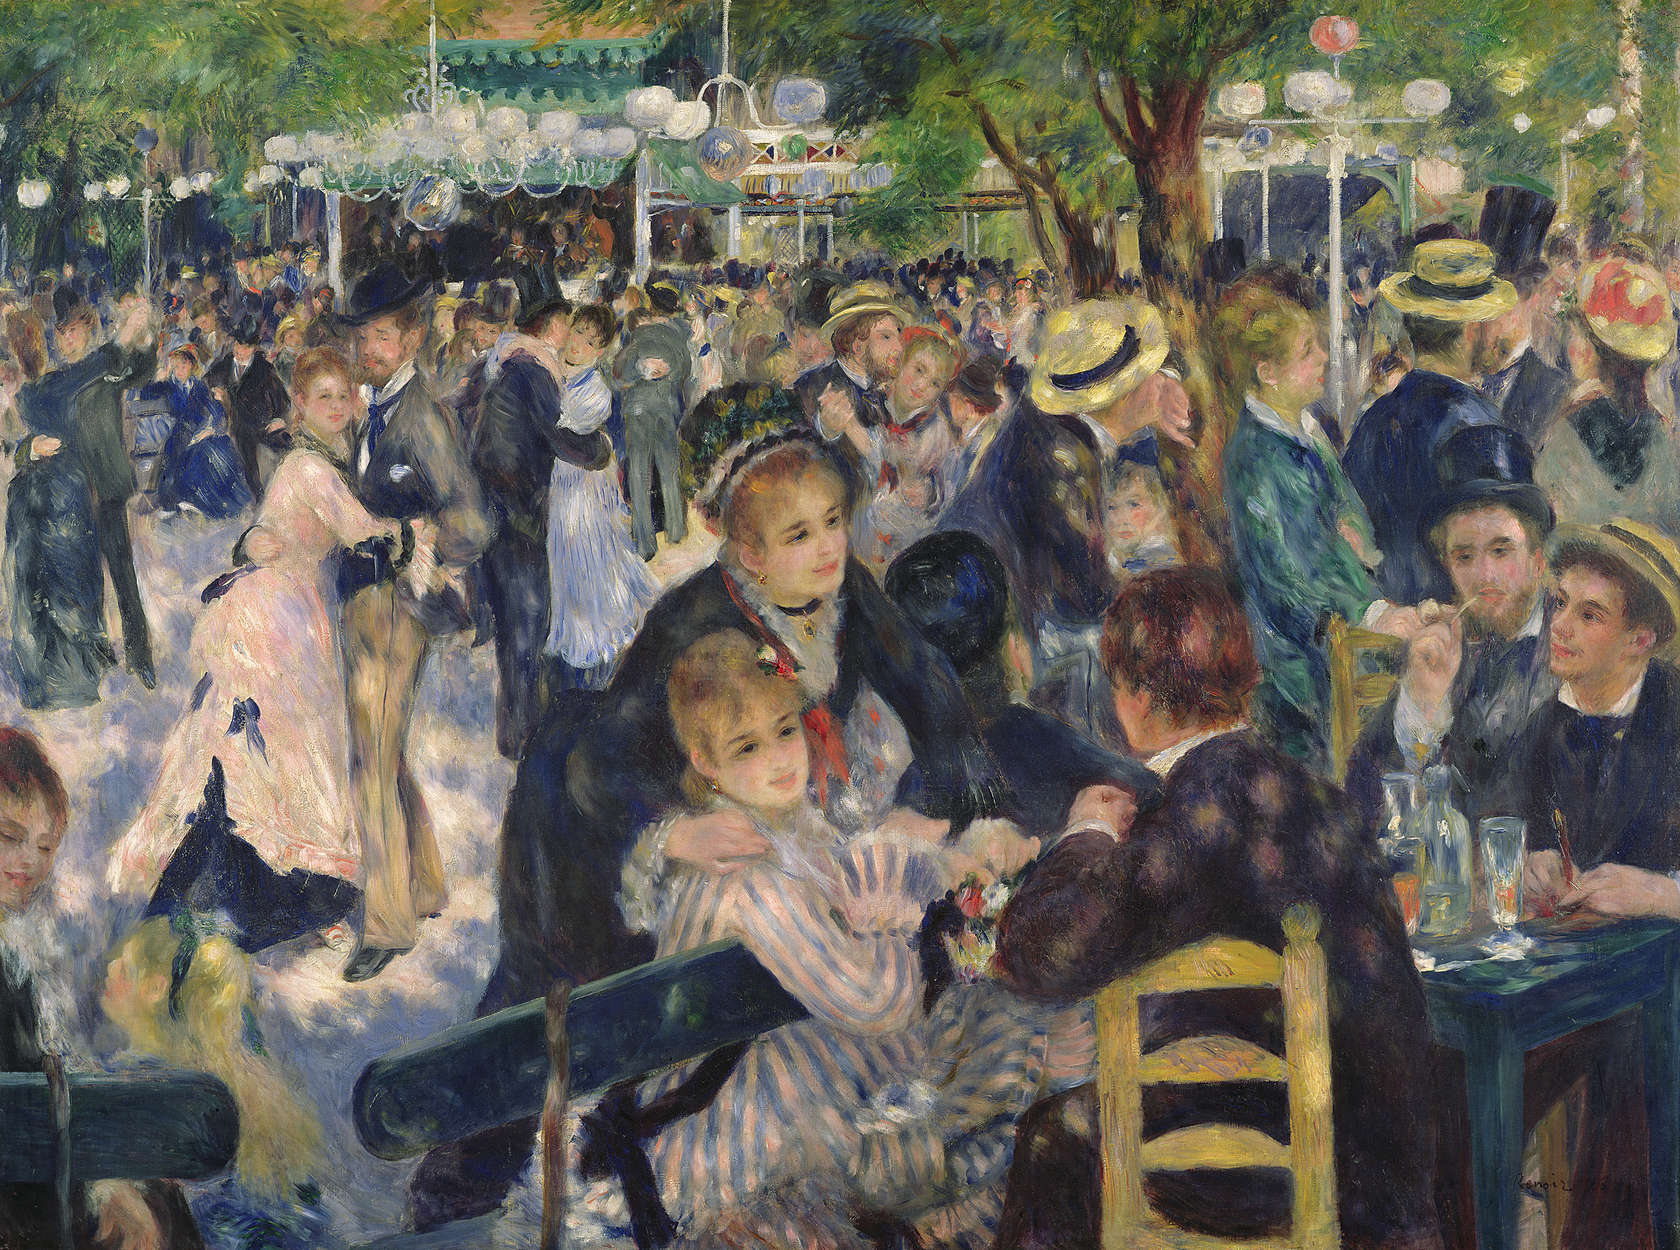             Muurschildering "Bal in de Moulin de la Galette" door Pierre Auguste Renoir
        